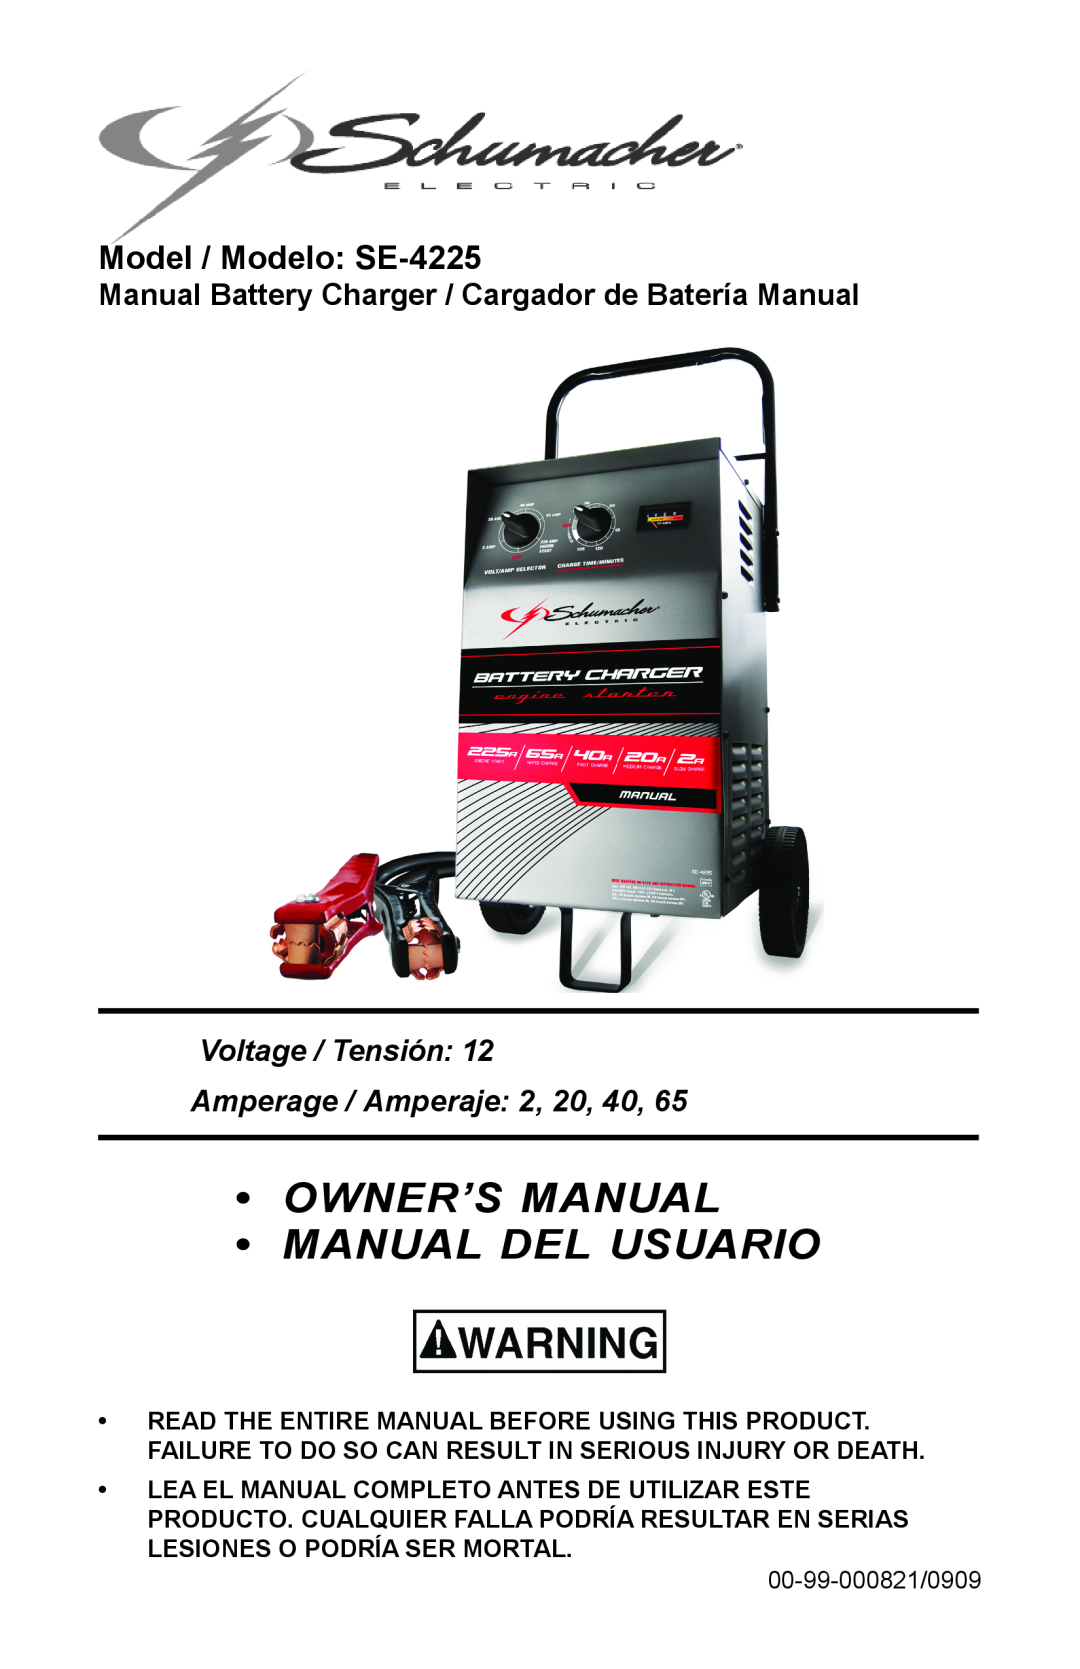 Schumacher owner manual Model / Modelo SE-4225, Manual Battery Charger / Cargador de Batería Manual 